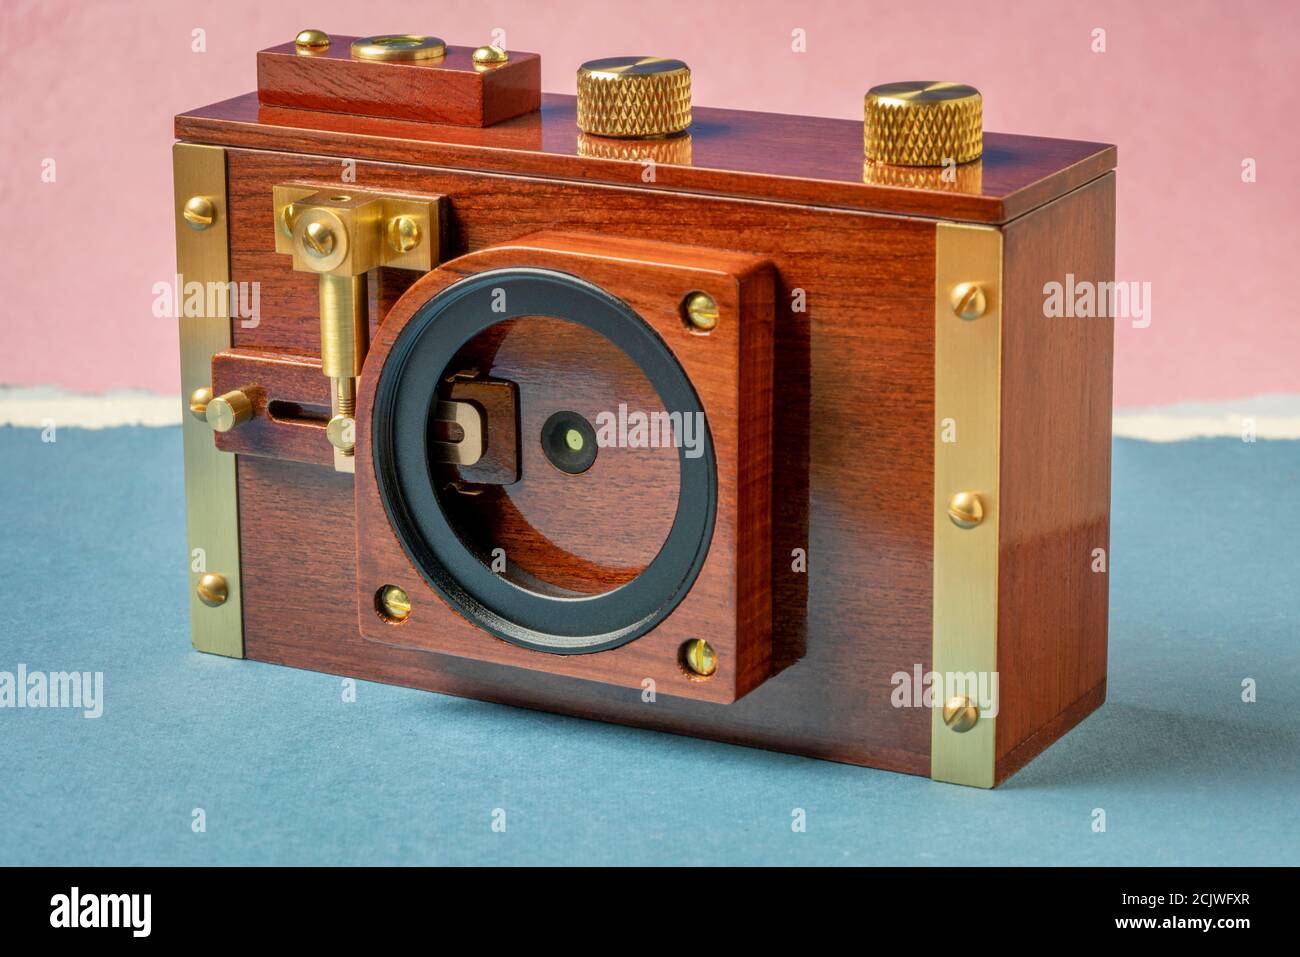 appareil photo à trou d'épingle de film de format moyen avec support de filtre et mécanisme d'obturation, concept de photographie alternatif Banque D'Images